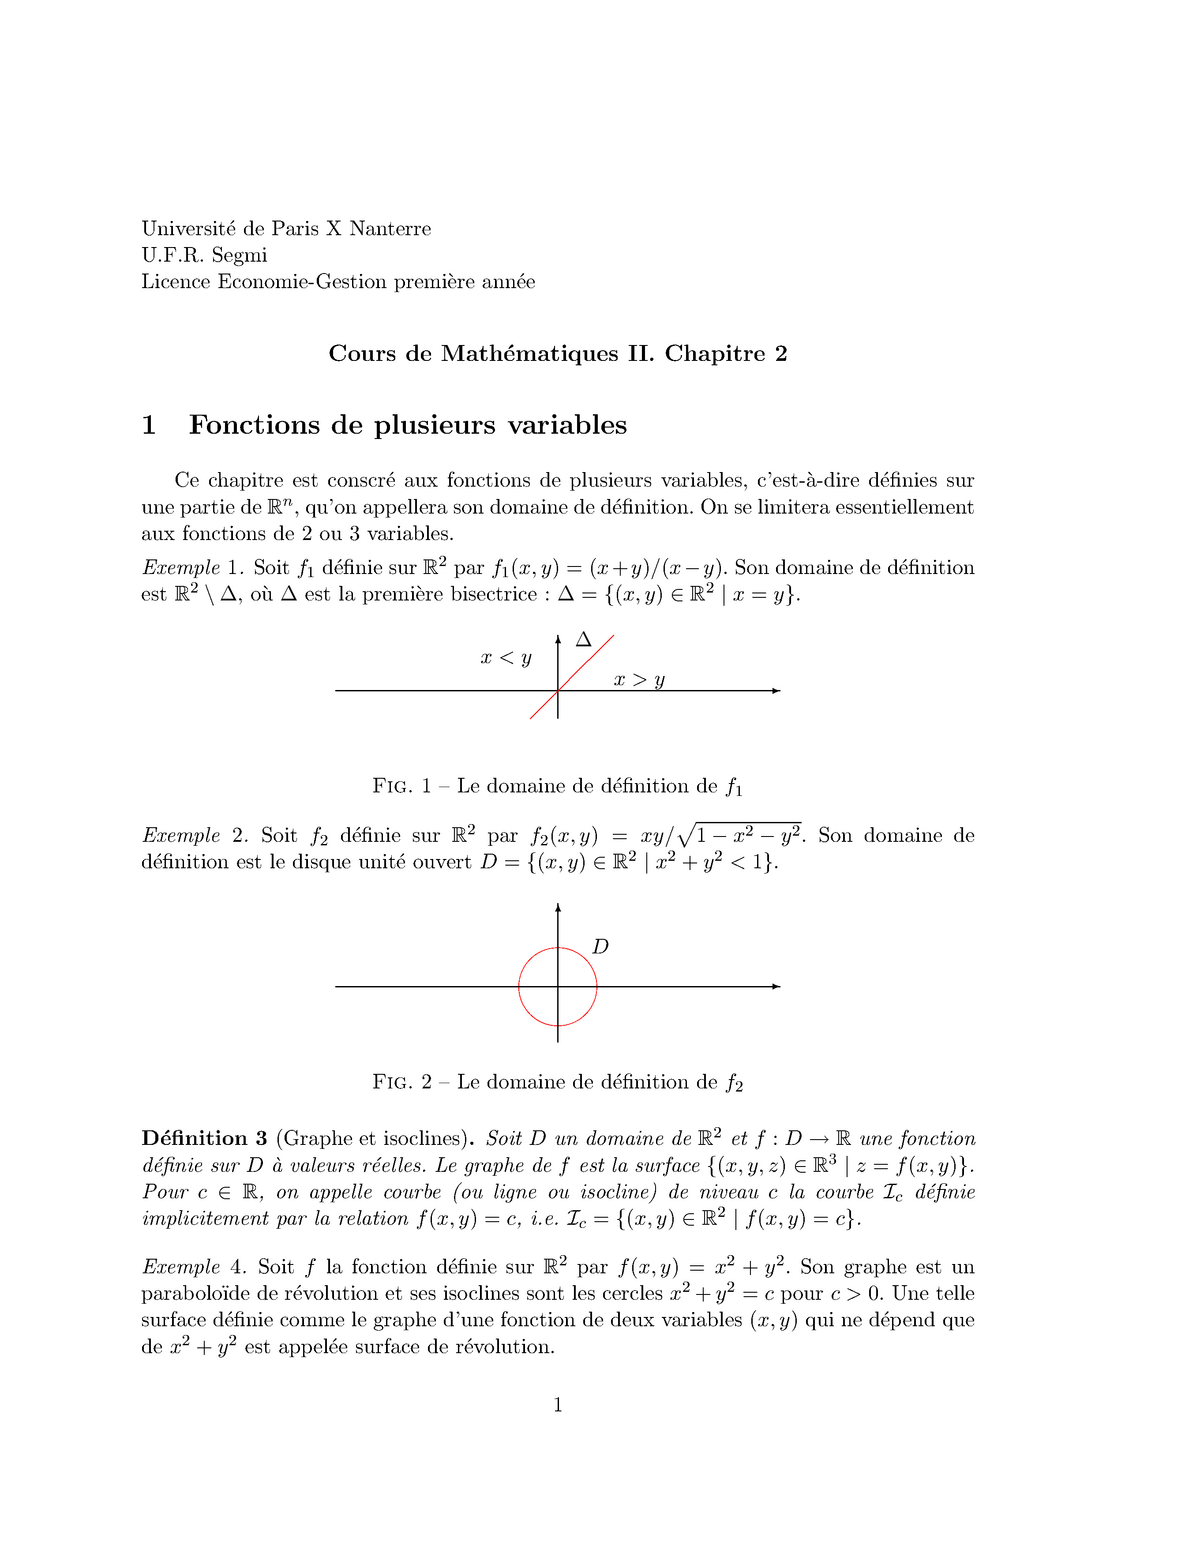 Mathematiques L1 S2 Suite Universit De Paris Nanterre Segmi Licence Economie Studocu